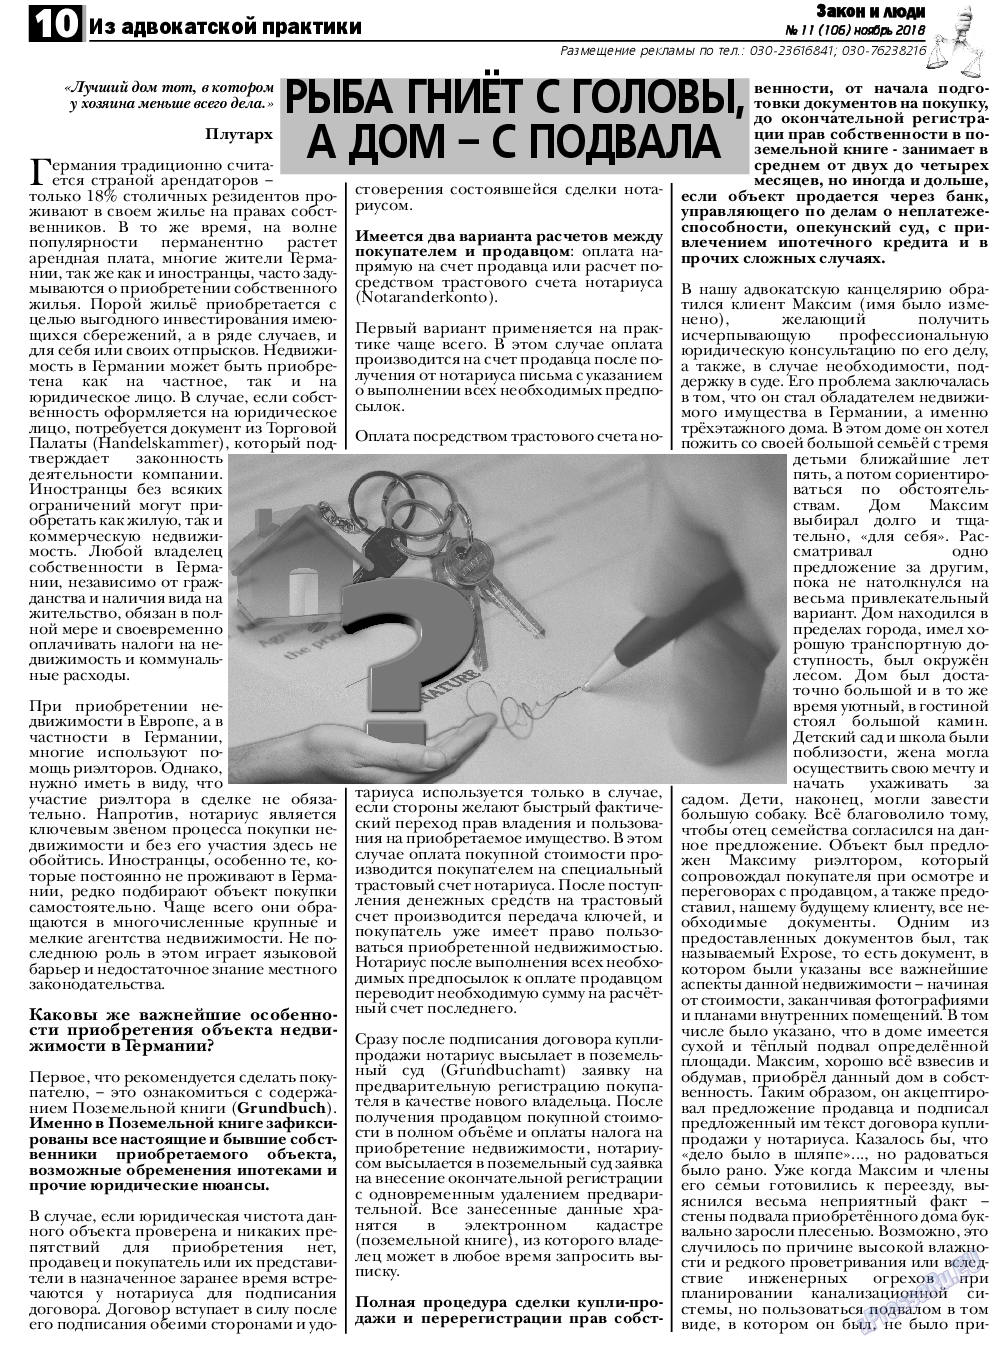 Закон и люди, газета. 2018 №11 стр.10